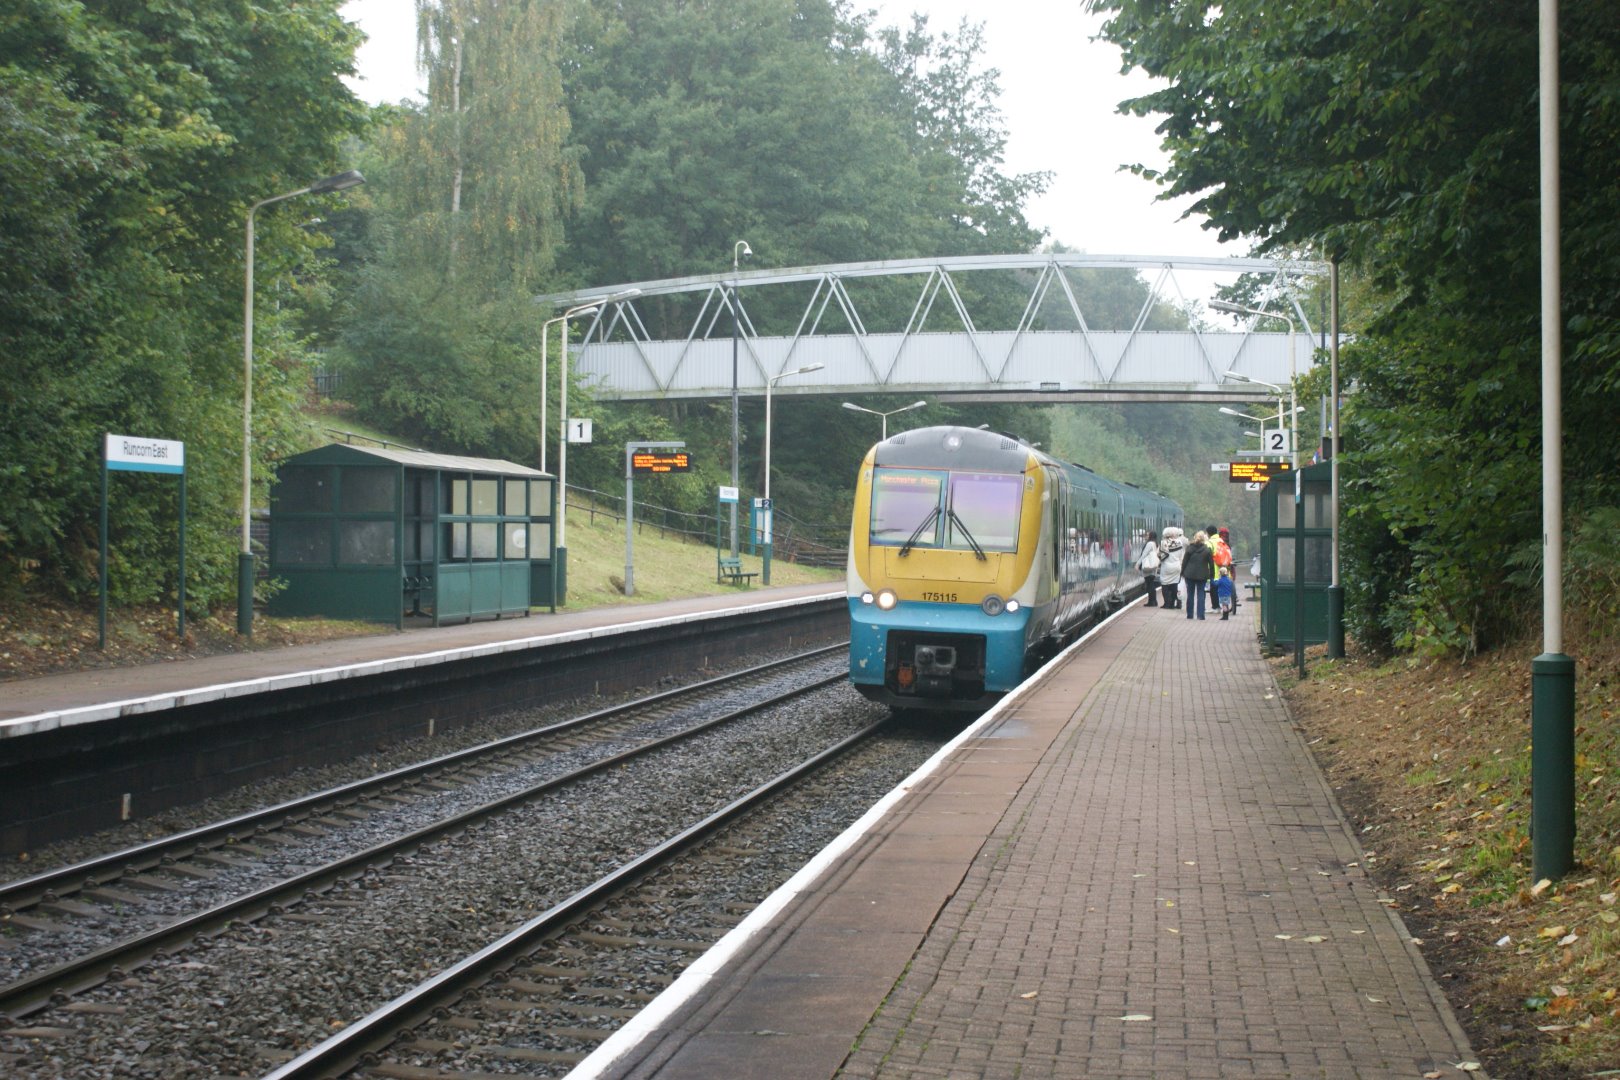 Runcorn East - Chester bound platform